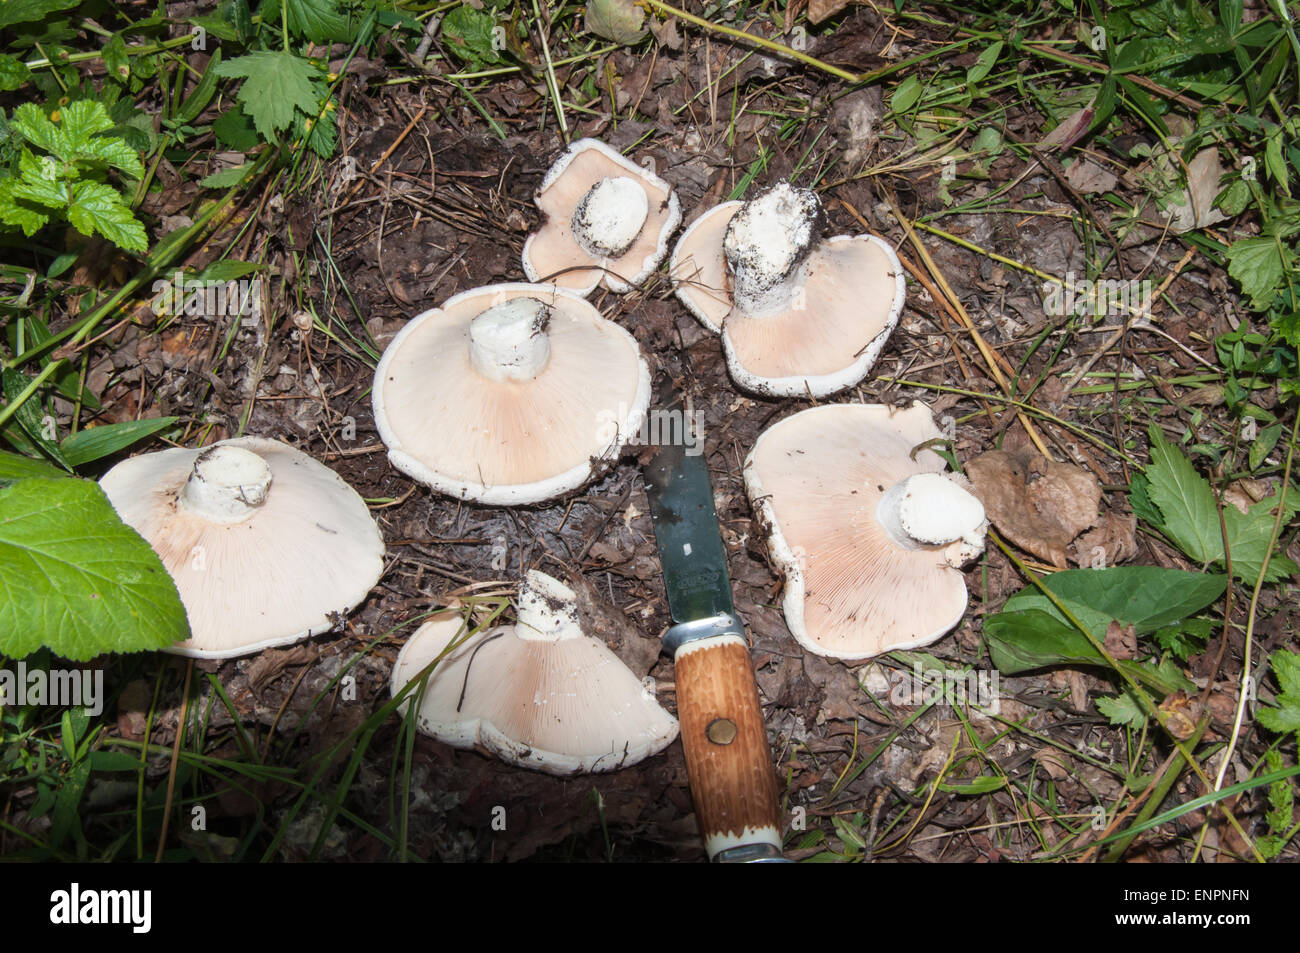 White Lactarius or Lactarius resimus mushroom genus Lactarius family Russulaceae. Salted milk mushrooms is believed to exceed th Stock Photo